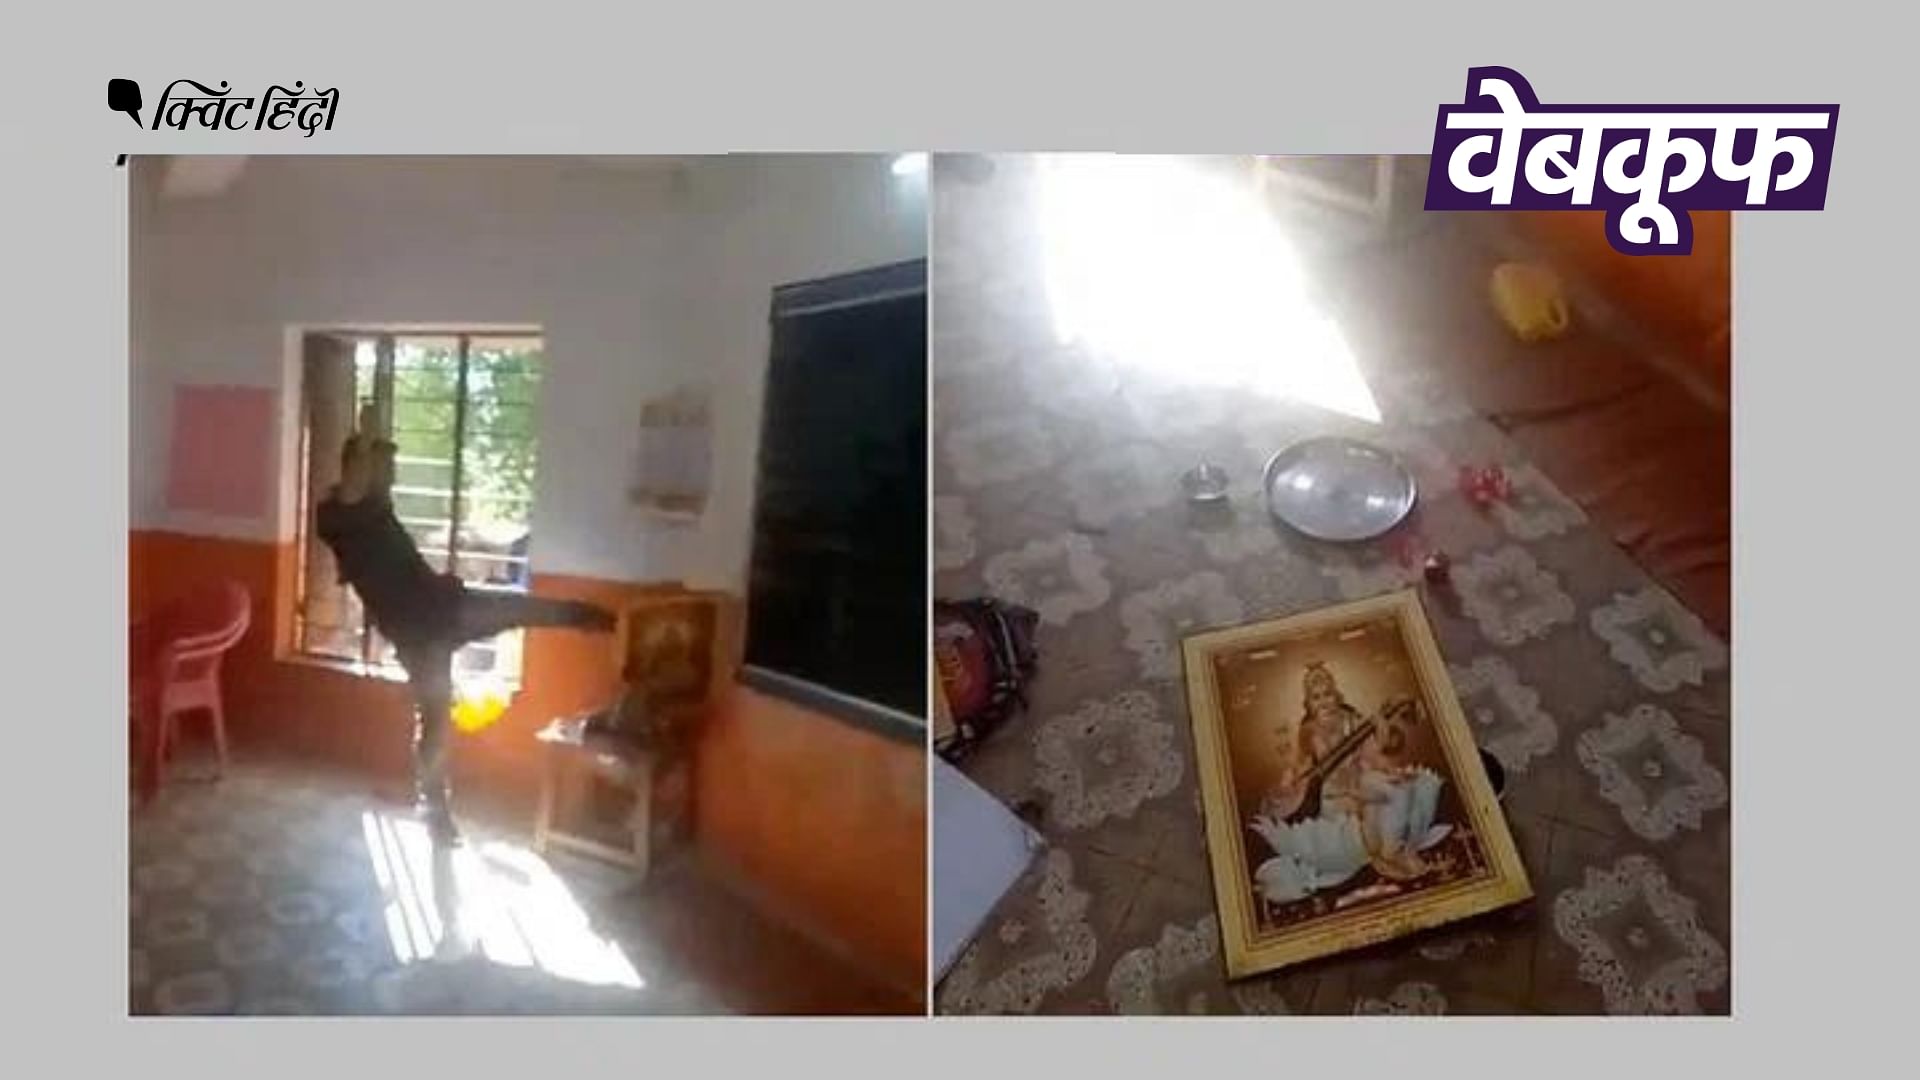 <div class="paragraphs"><p>सरस्वती देवी की तस्वीर पर लात मारते शख्स का वीडियो गलत दावे से वायरल</p></div>